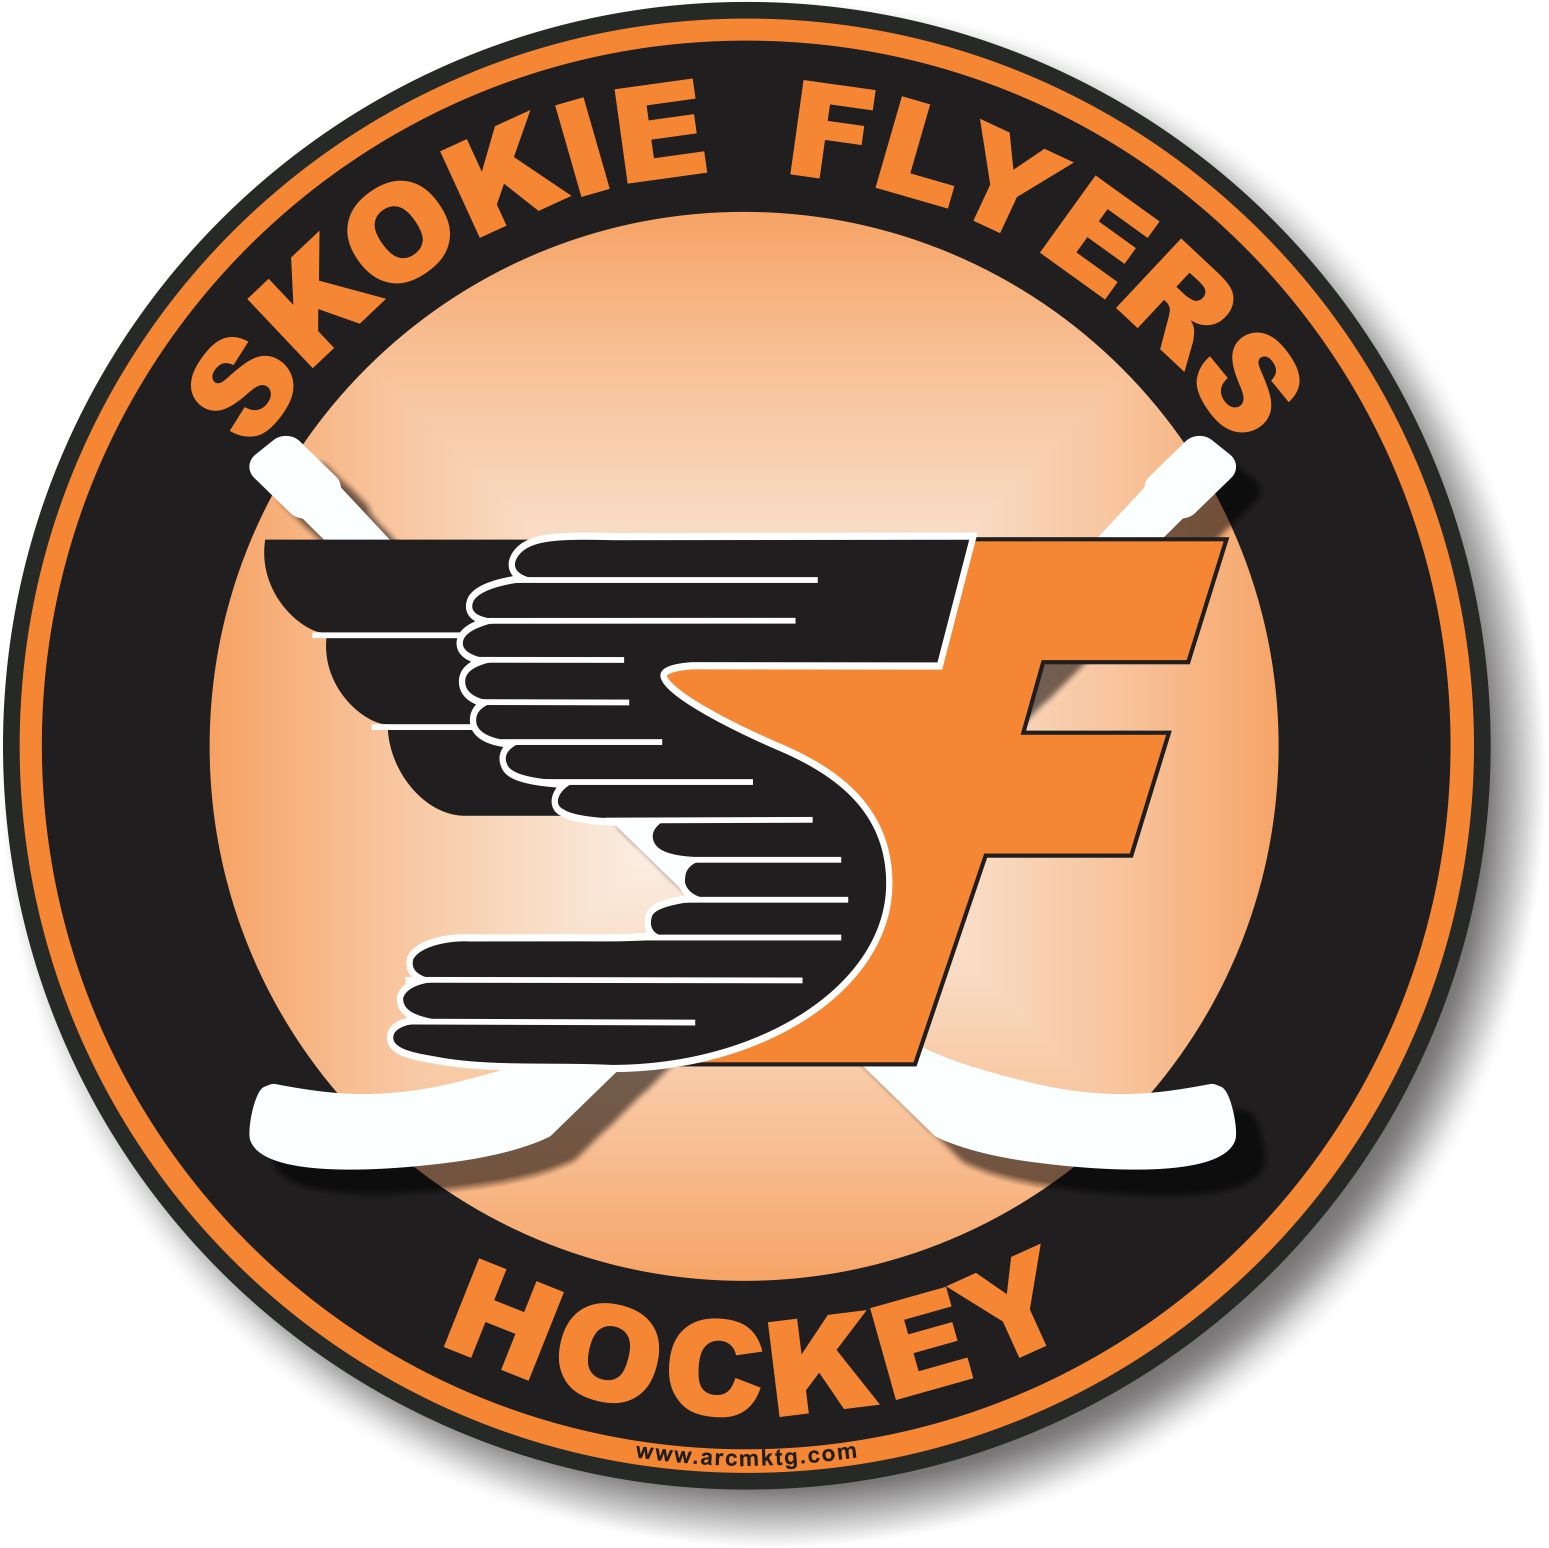 Flyers Youth Hockey Club